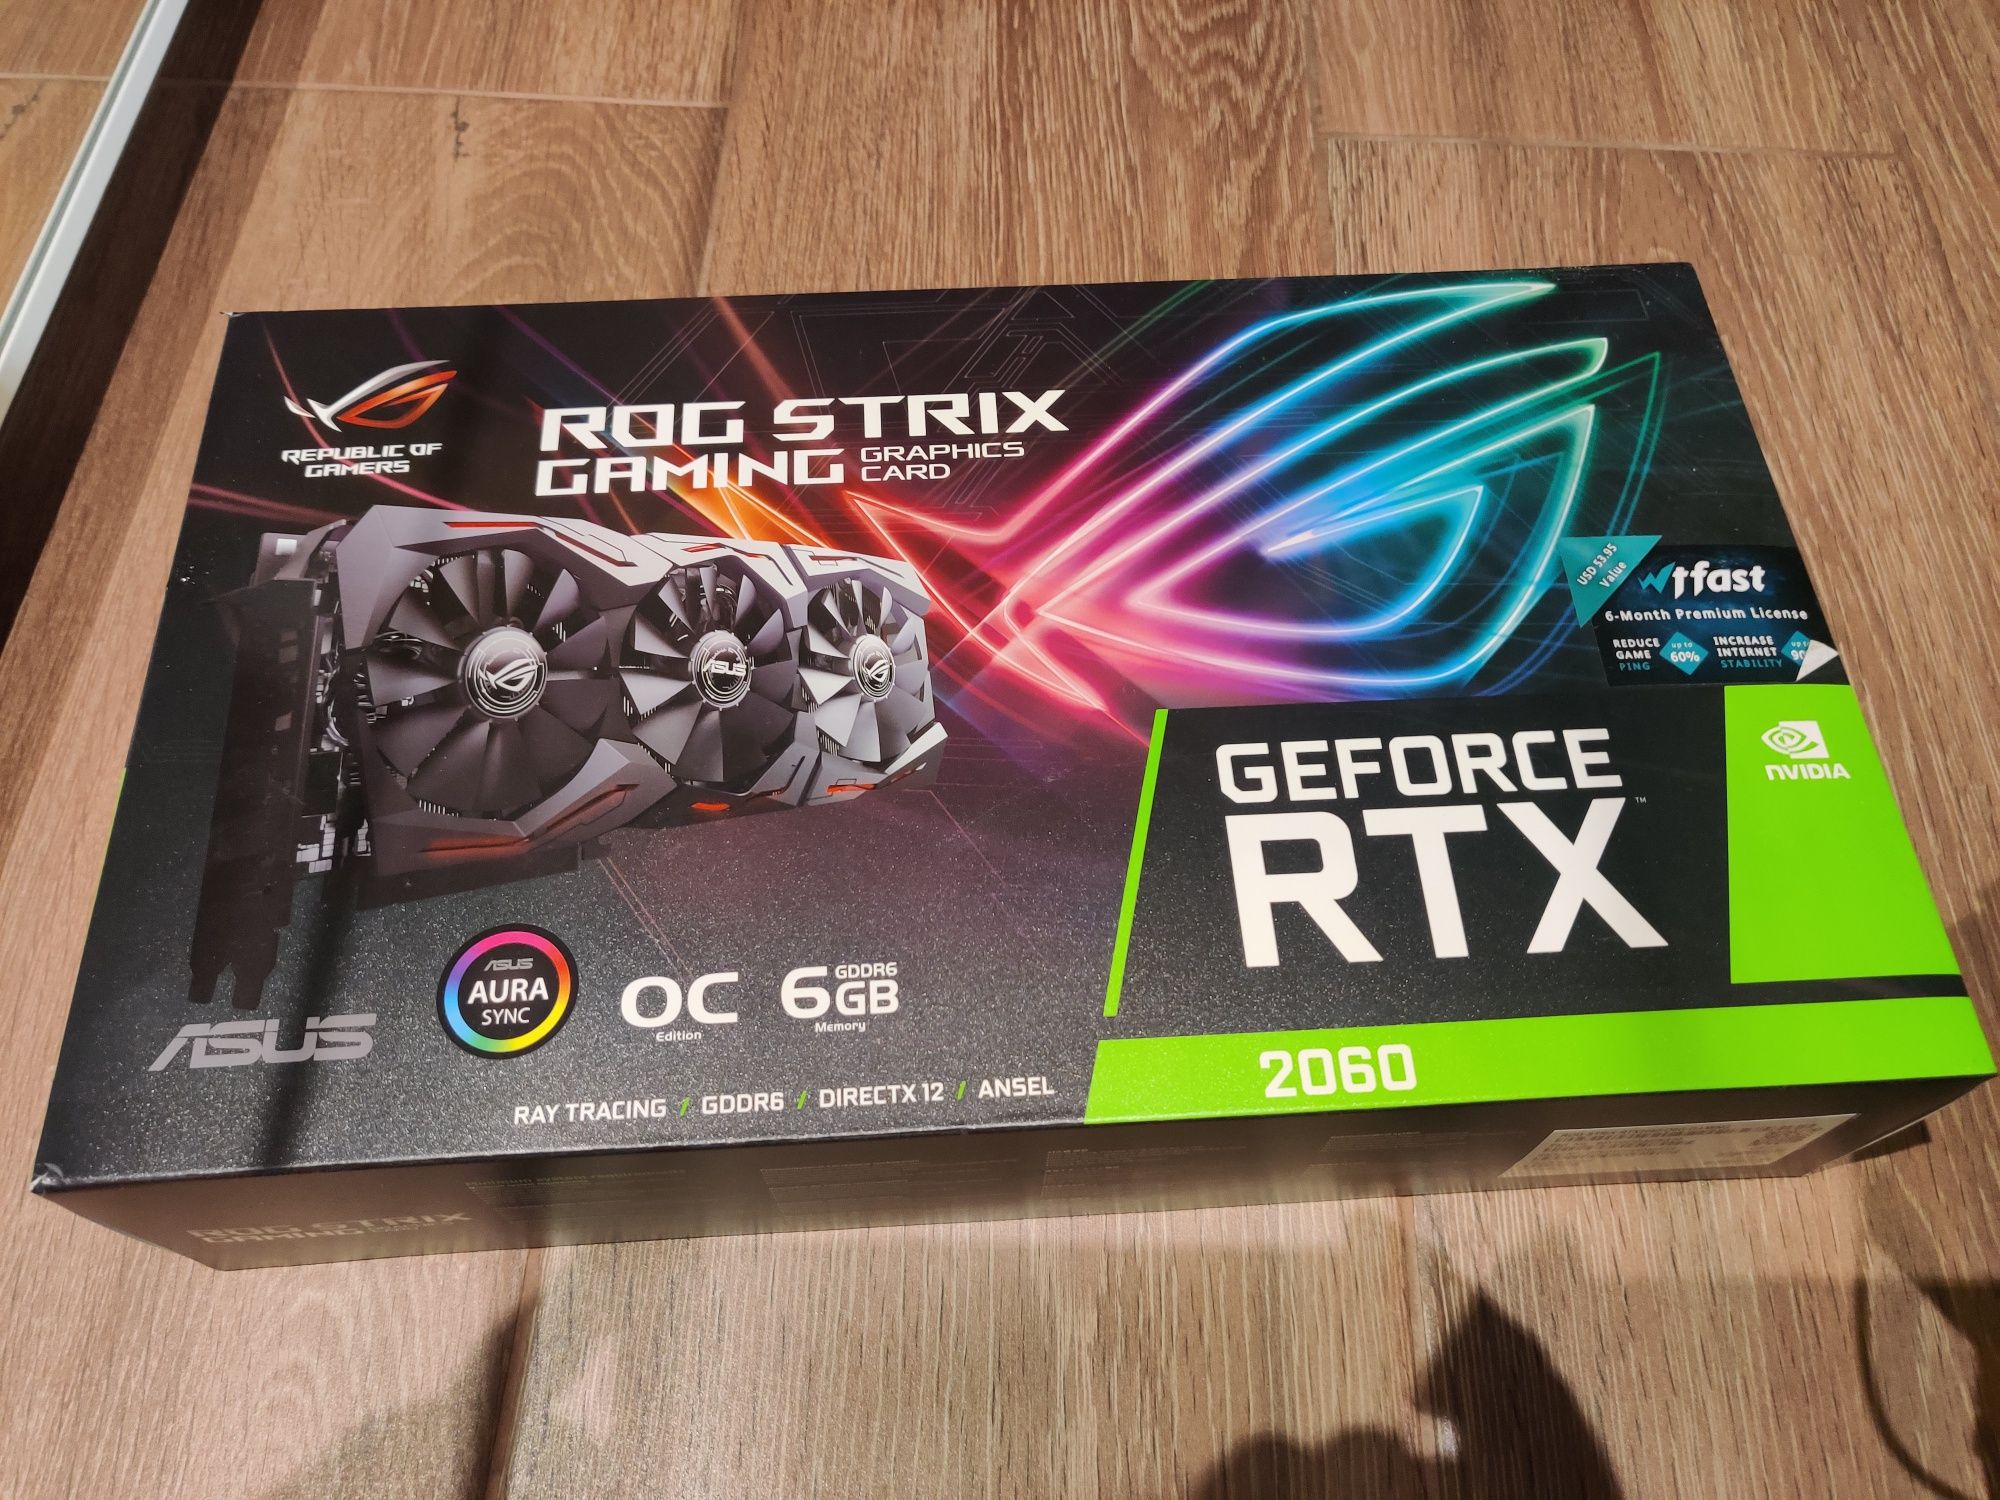 ASUS Rog Strix GeForce RTX 2060 6Gb